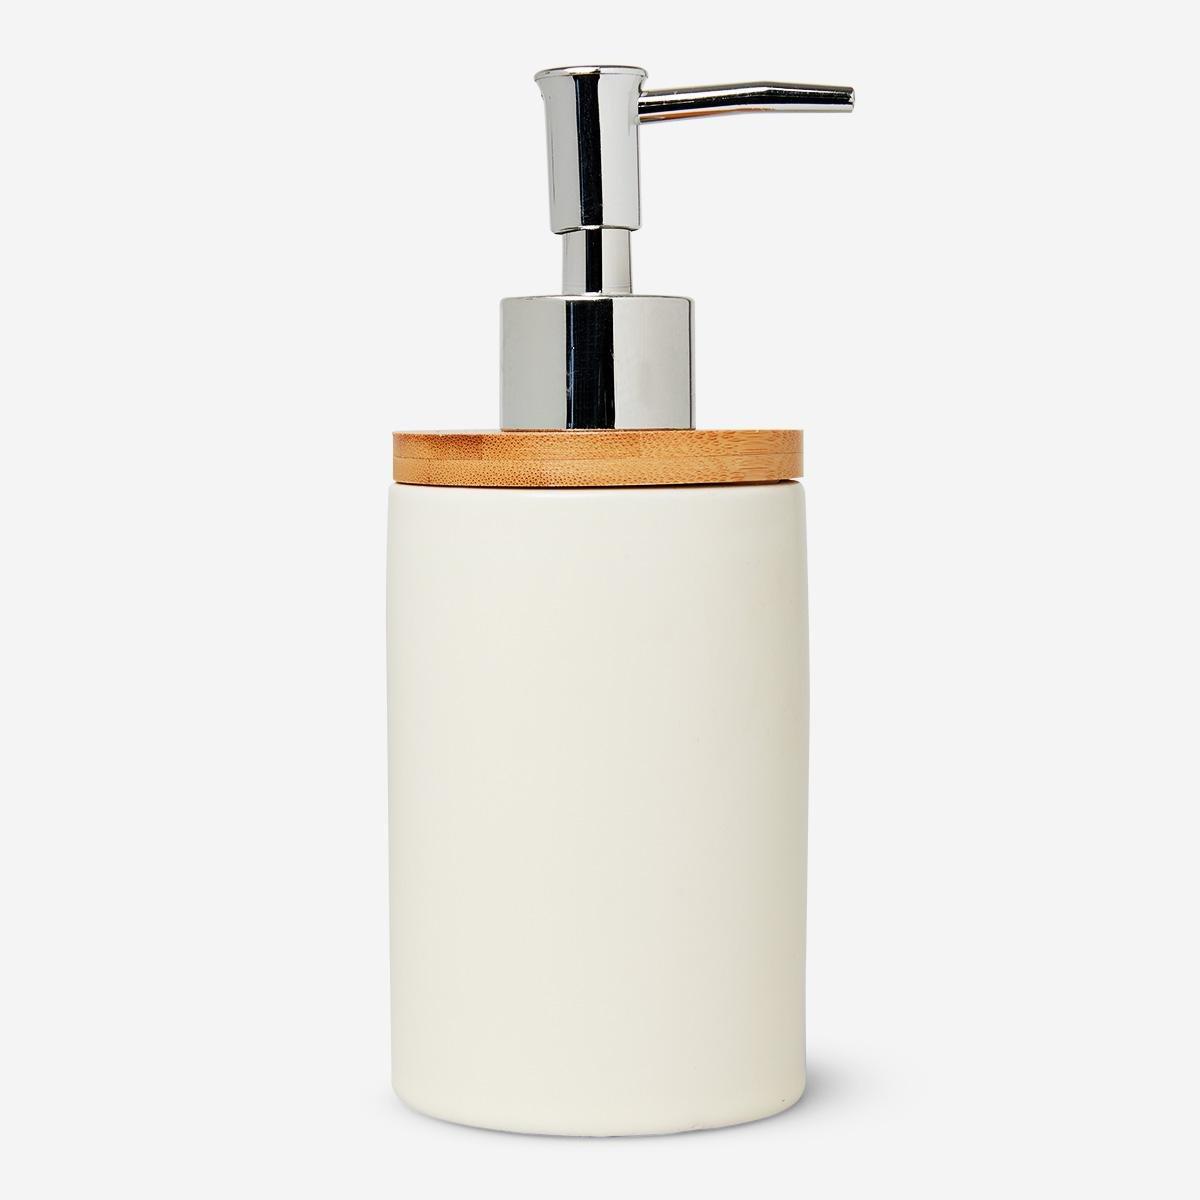 White ceramic soap dispenser